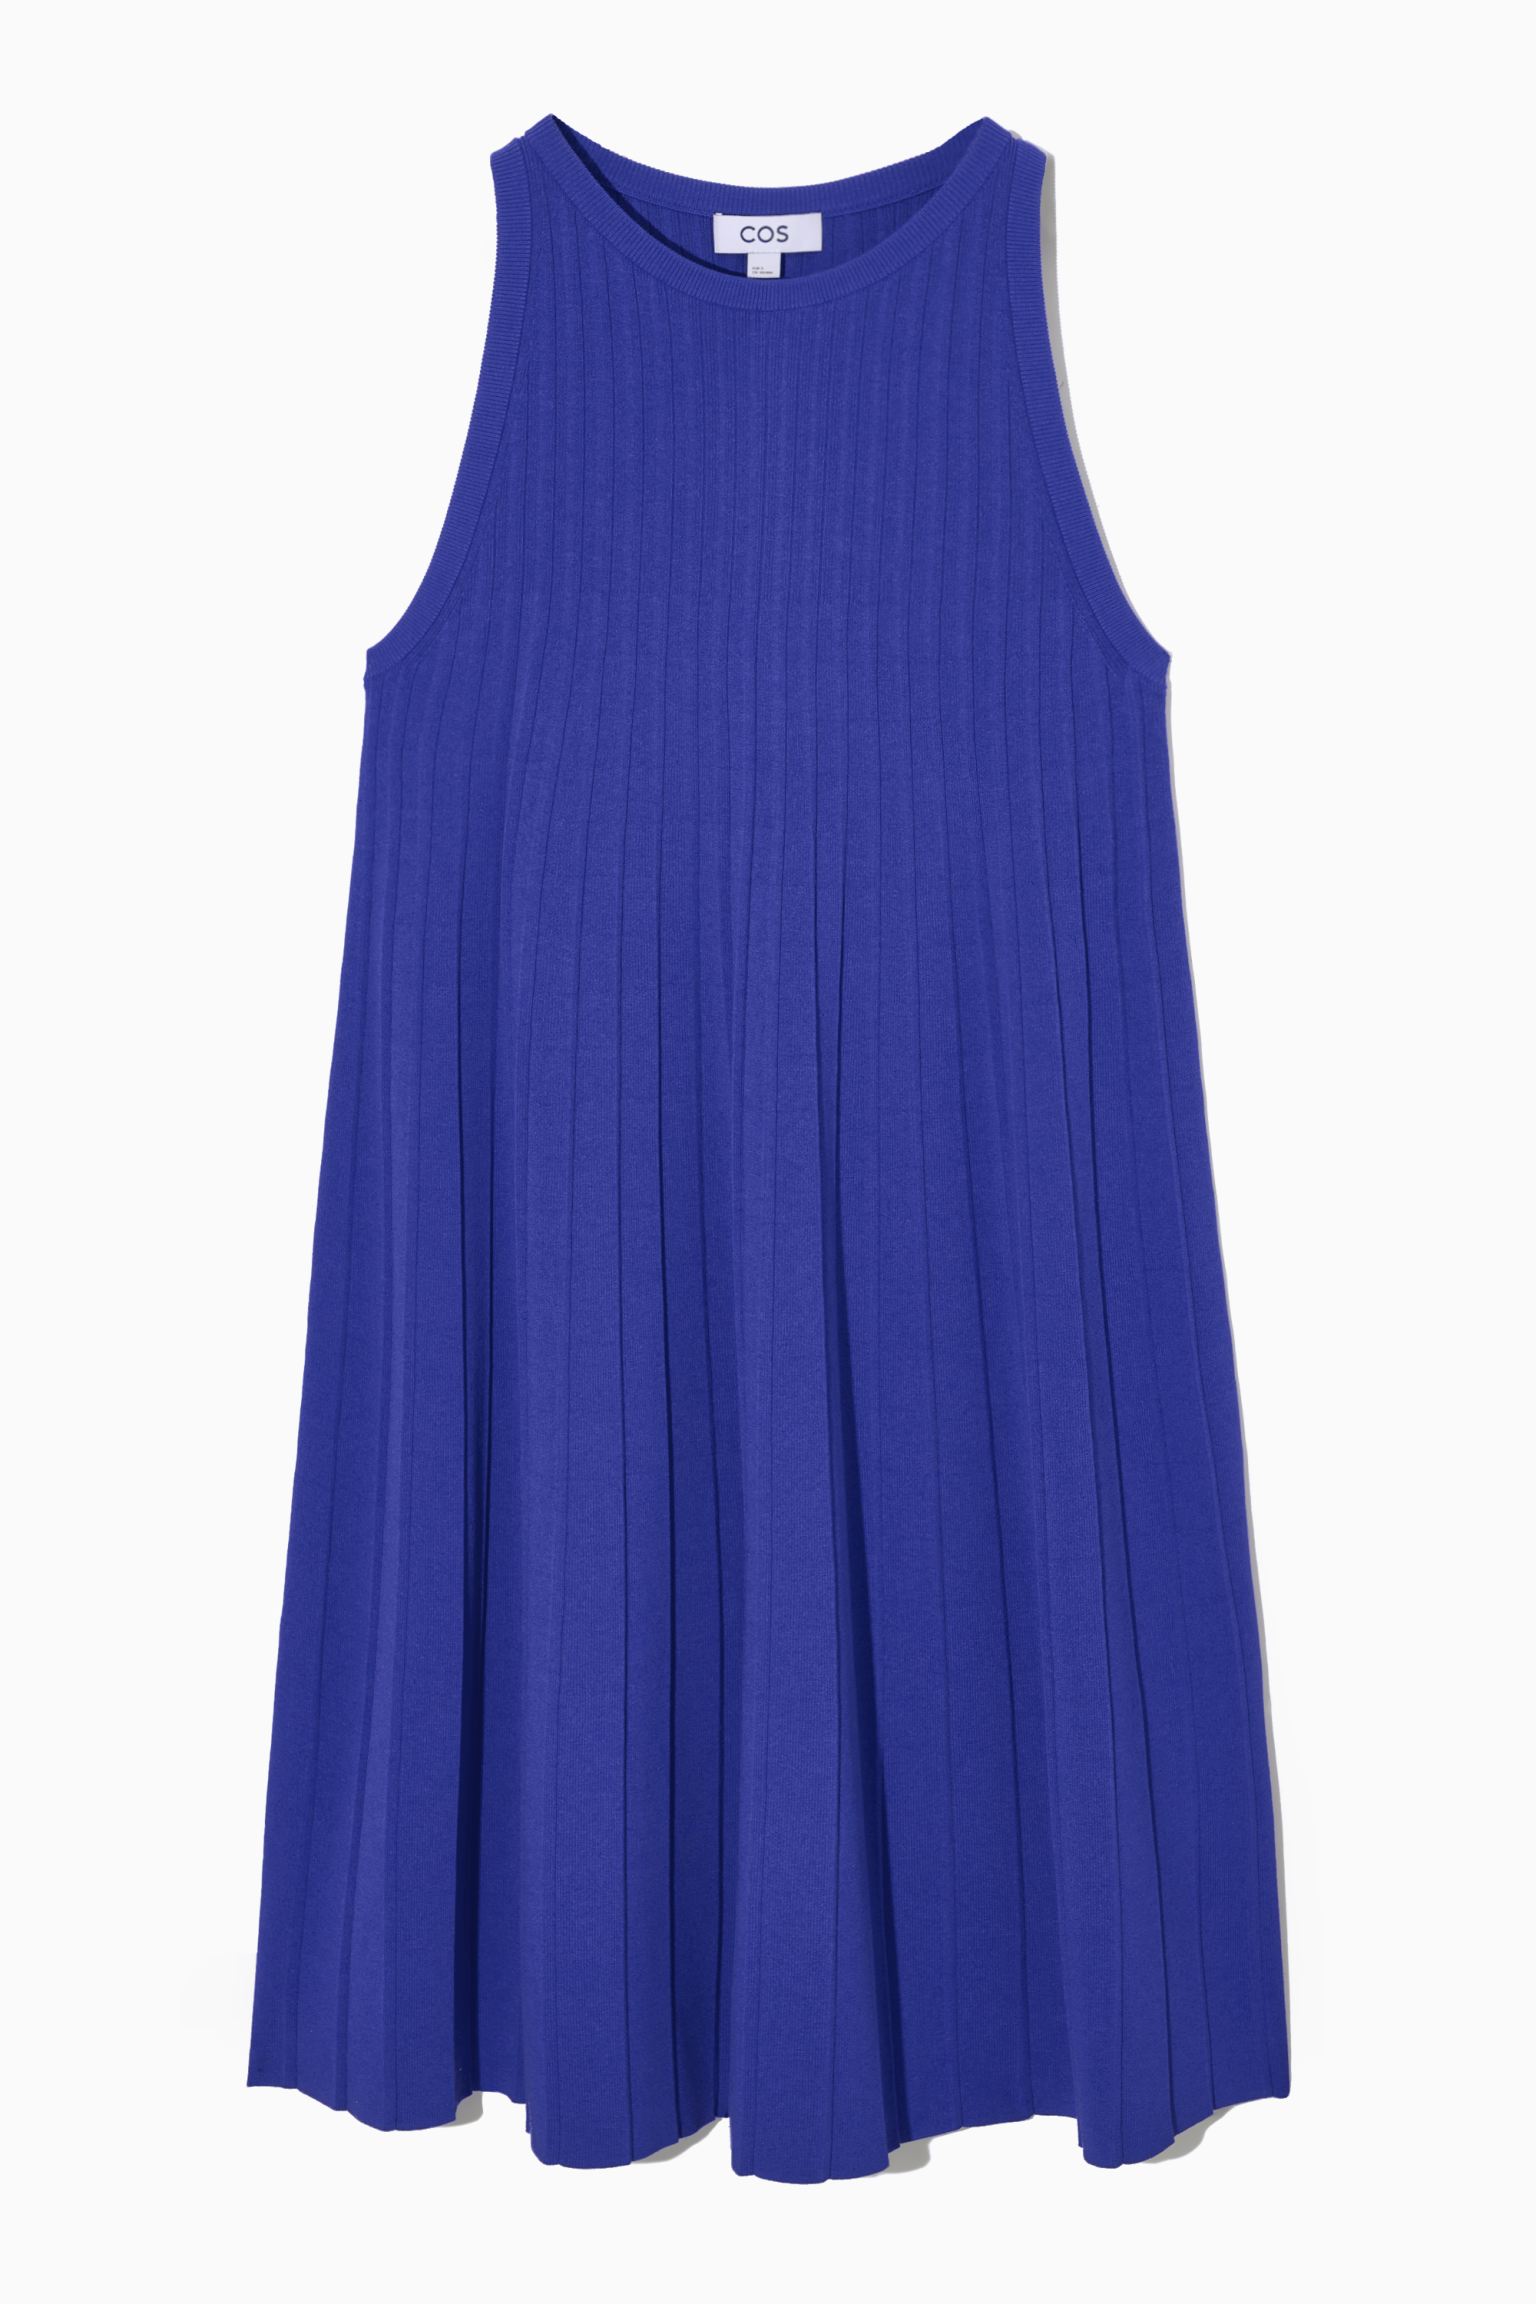 Платье женское COS 1083170006 синее M (доставка из-за рубежа)